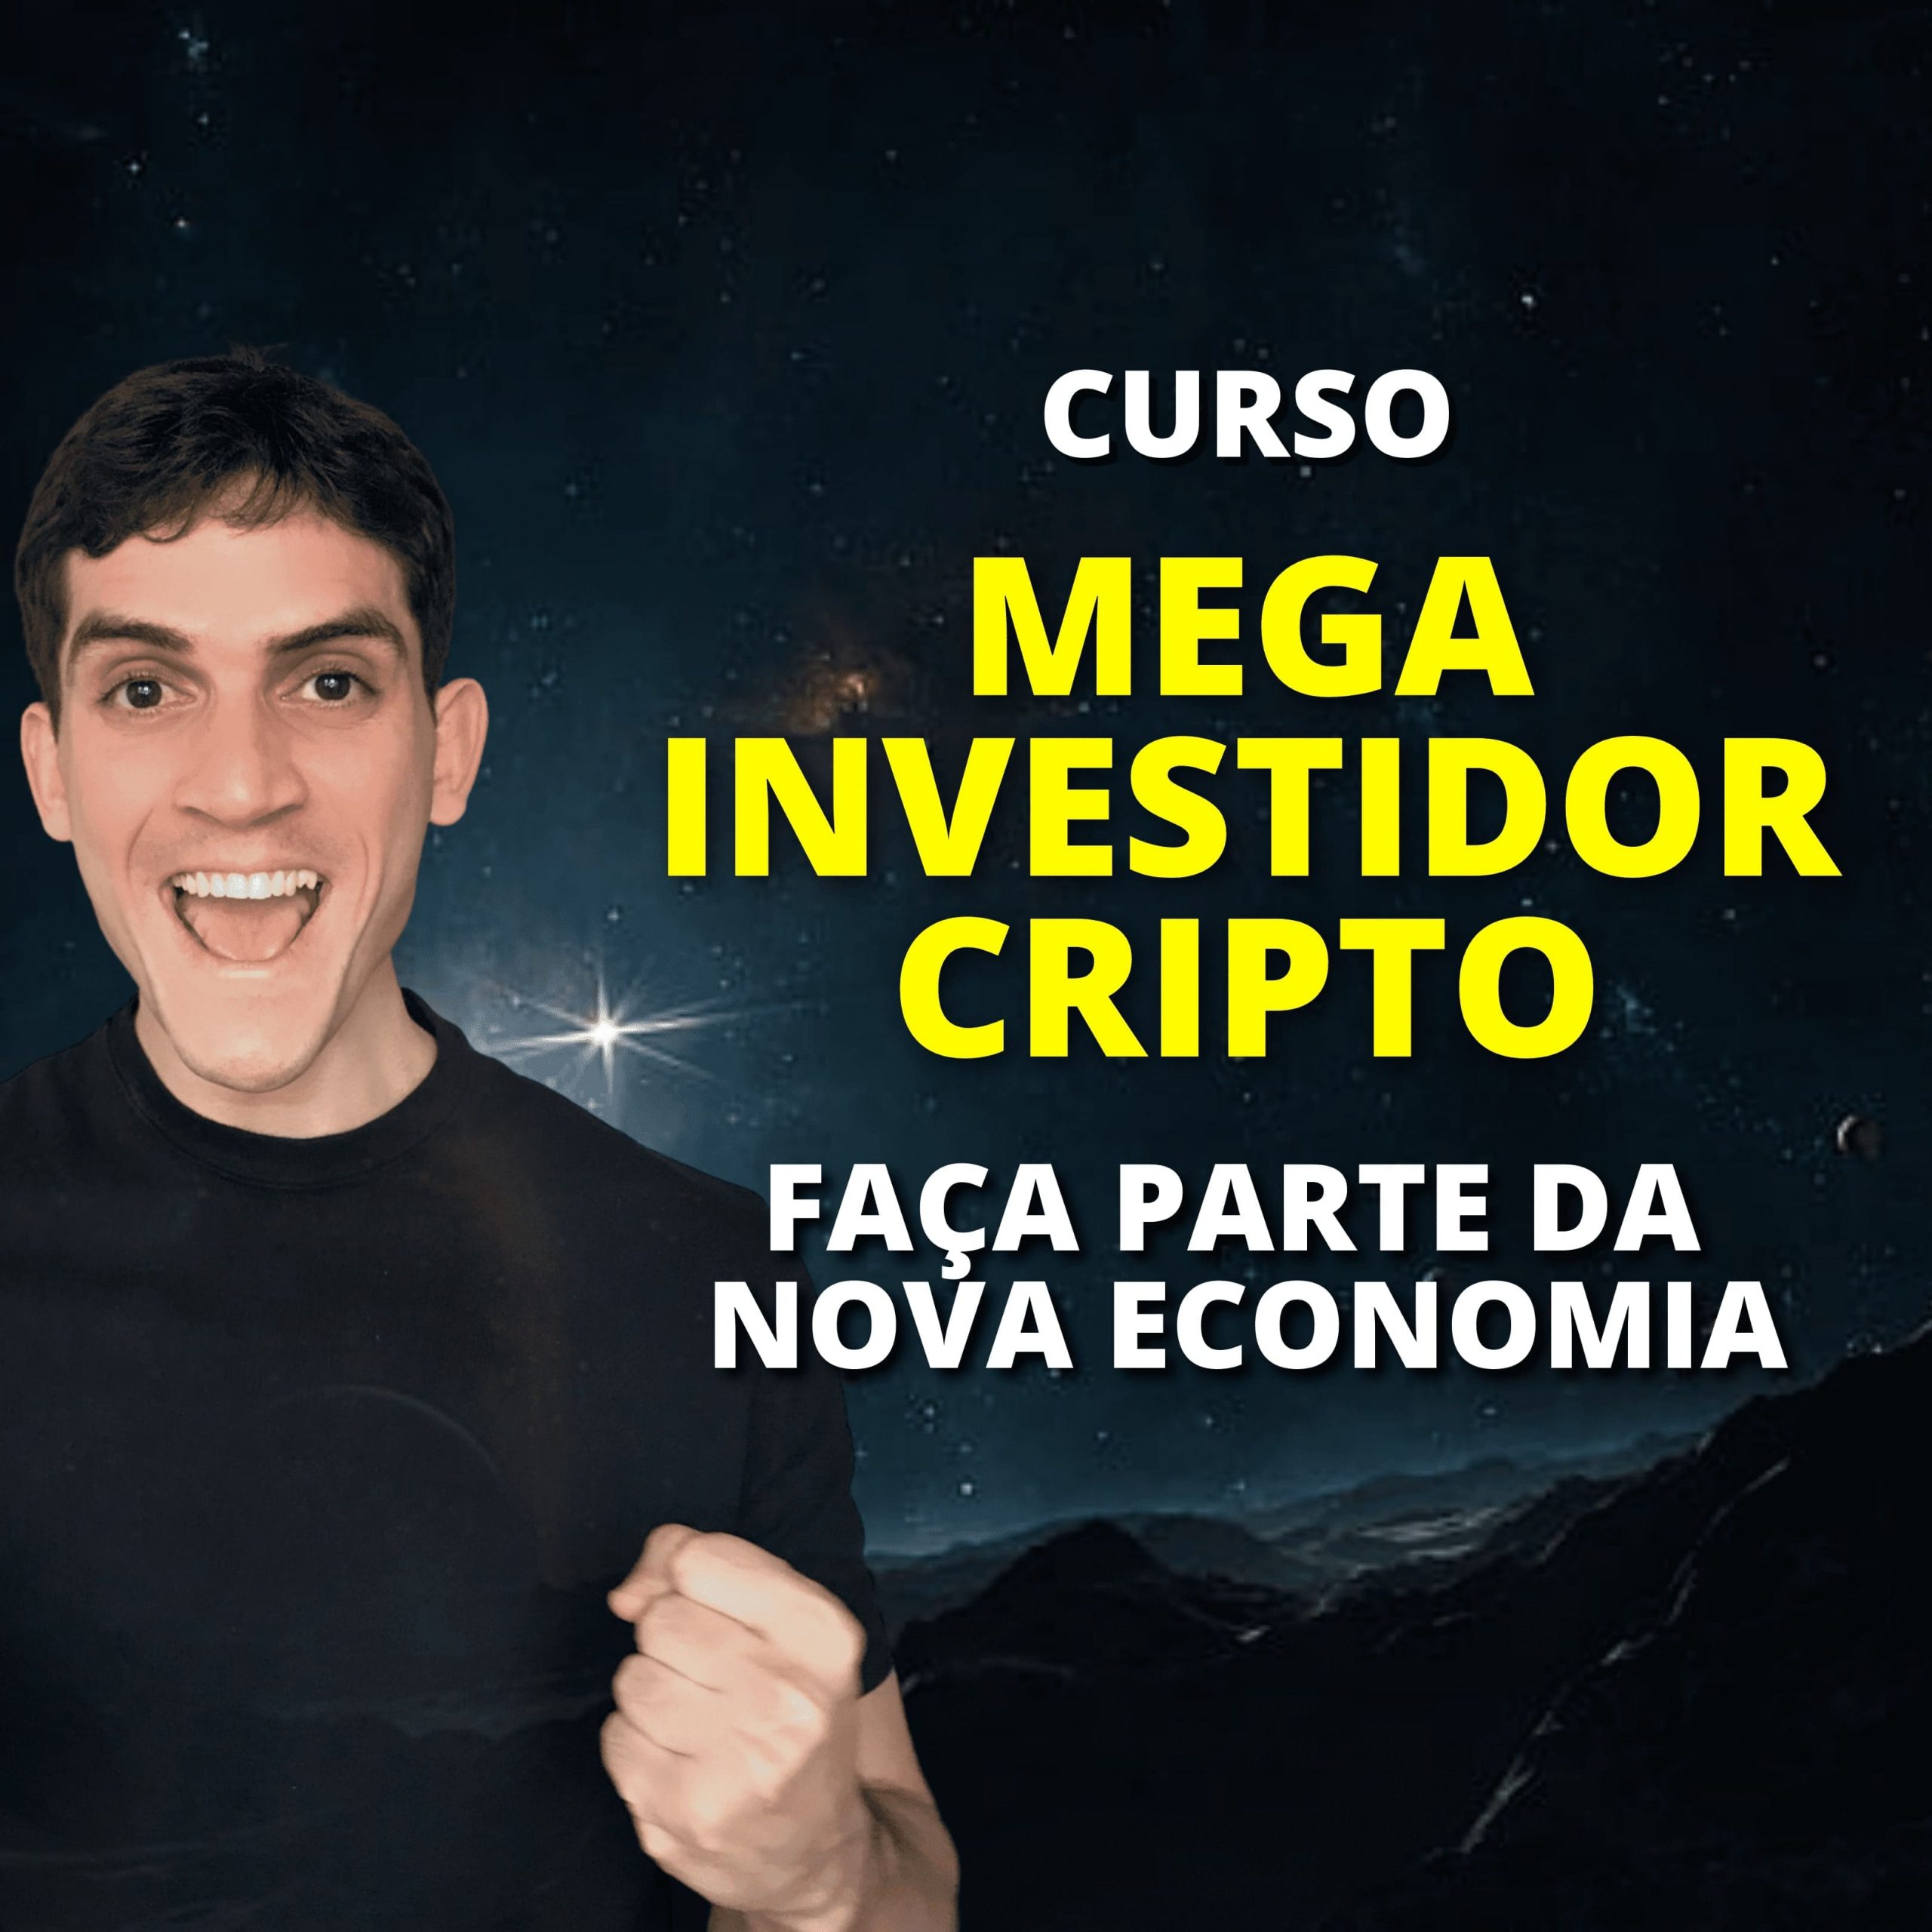 Curso Mega Investidor Cripto - Criado por Thiago Rocha - O Criptonauta